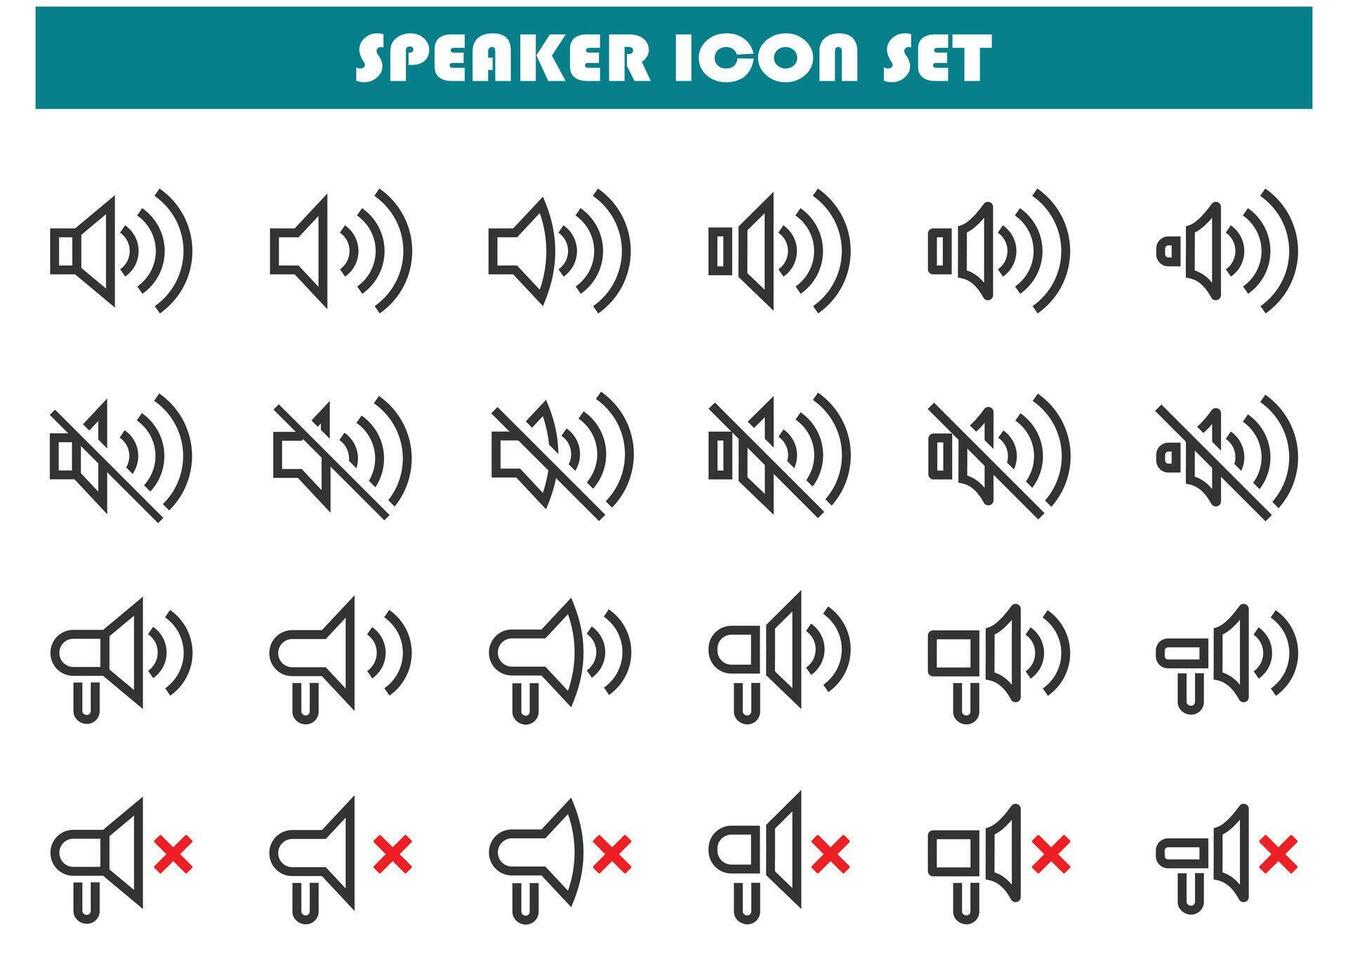 Speaker icon set vector